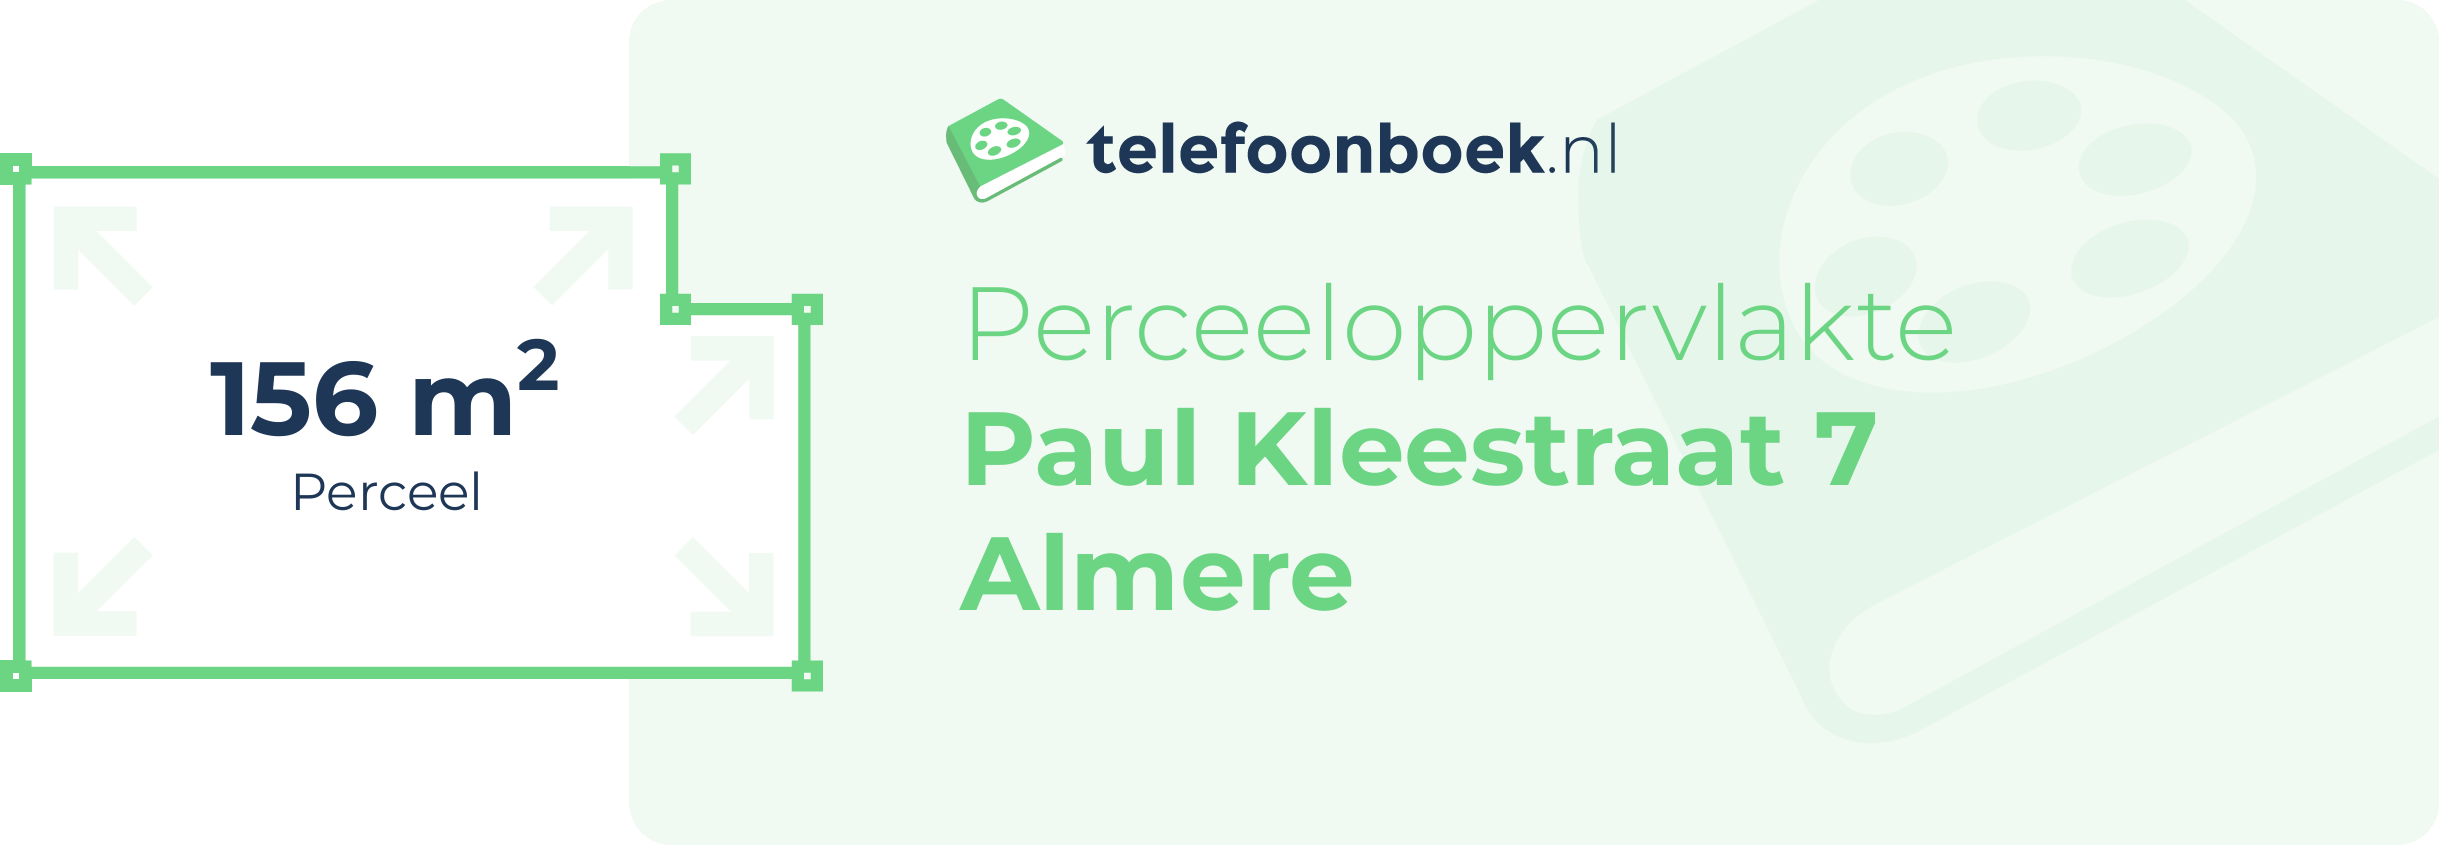 Perceeloppervlakte Paul Kleestraat 7 Almere